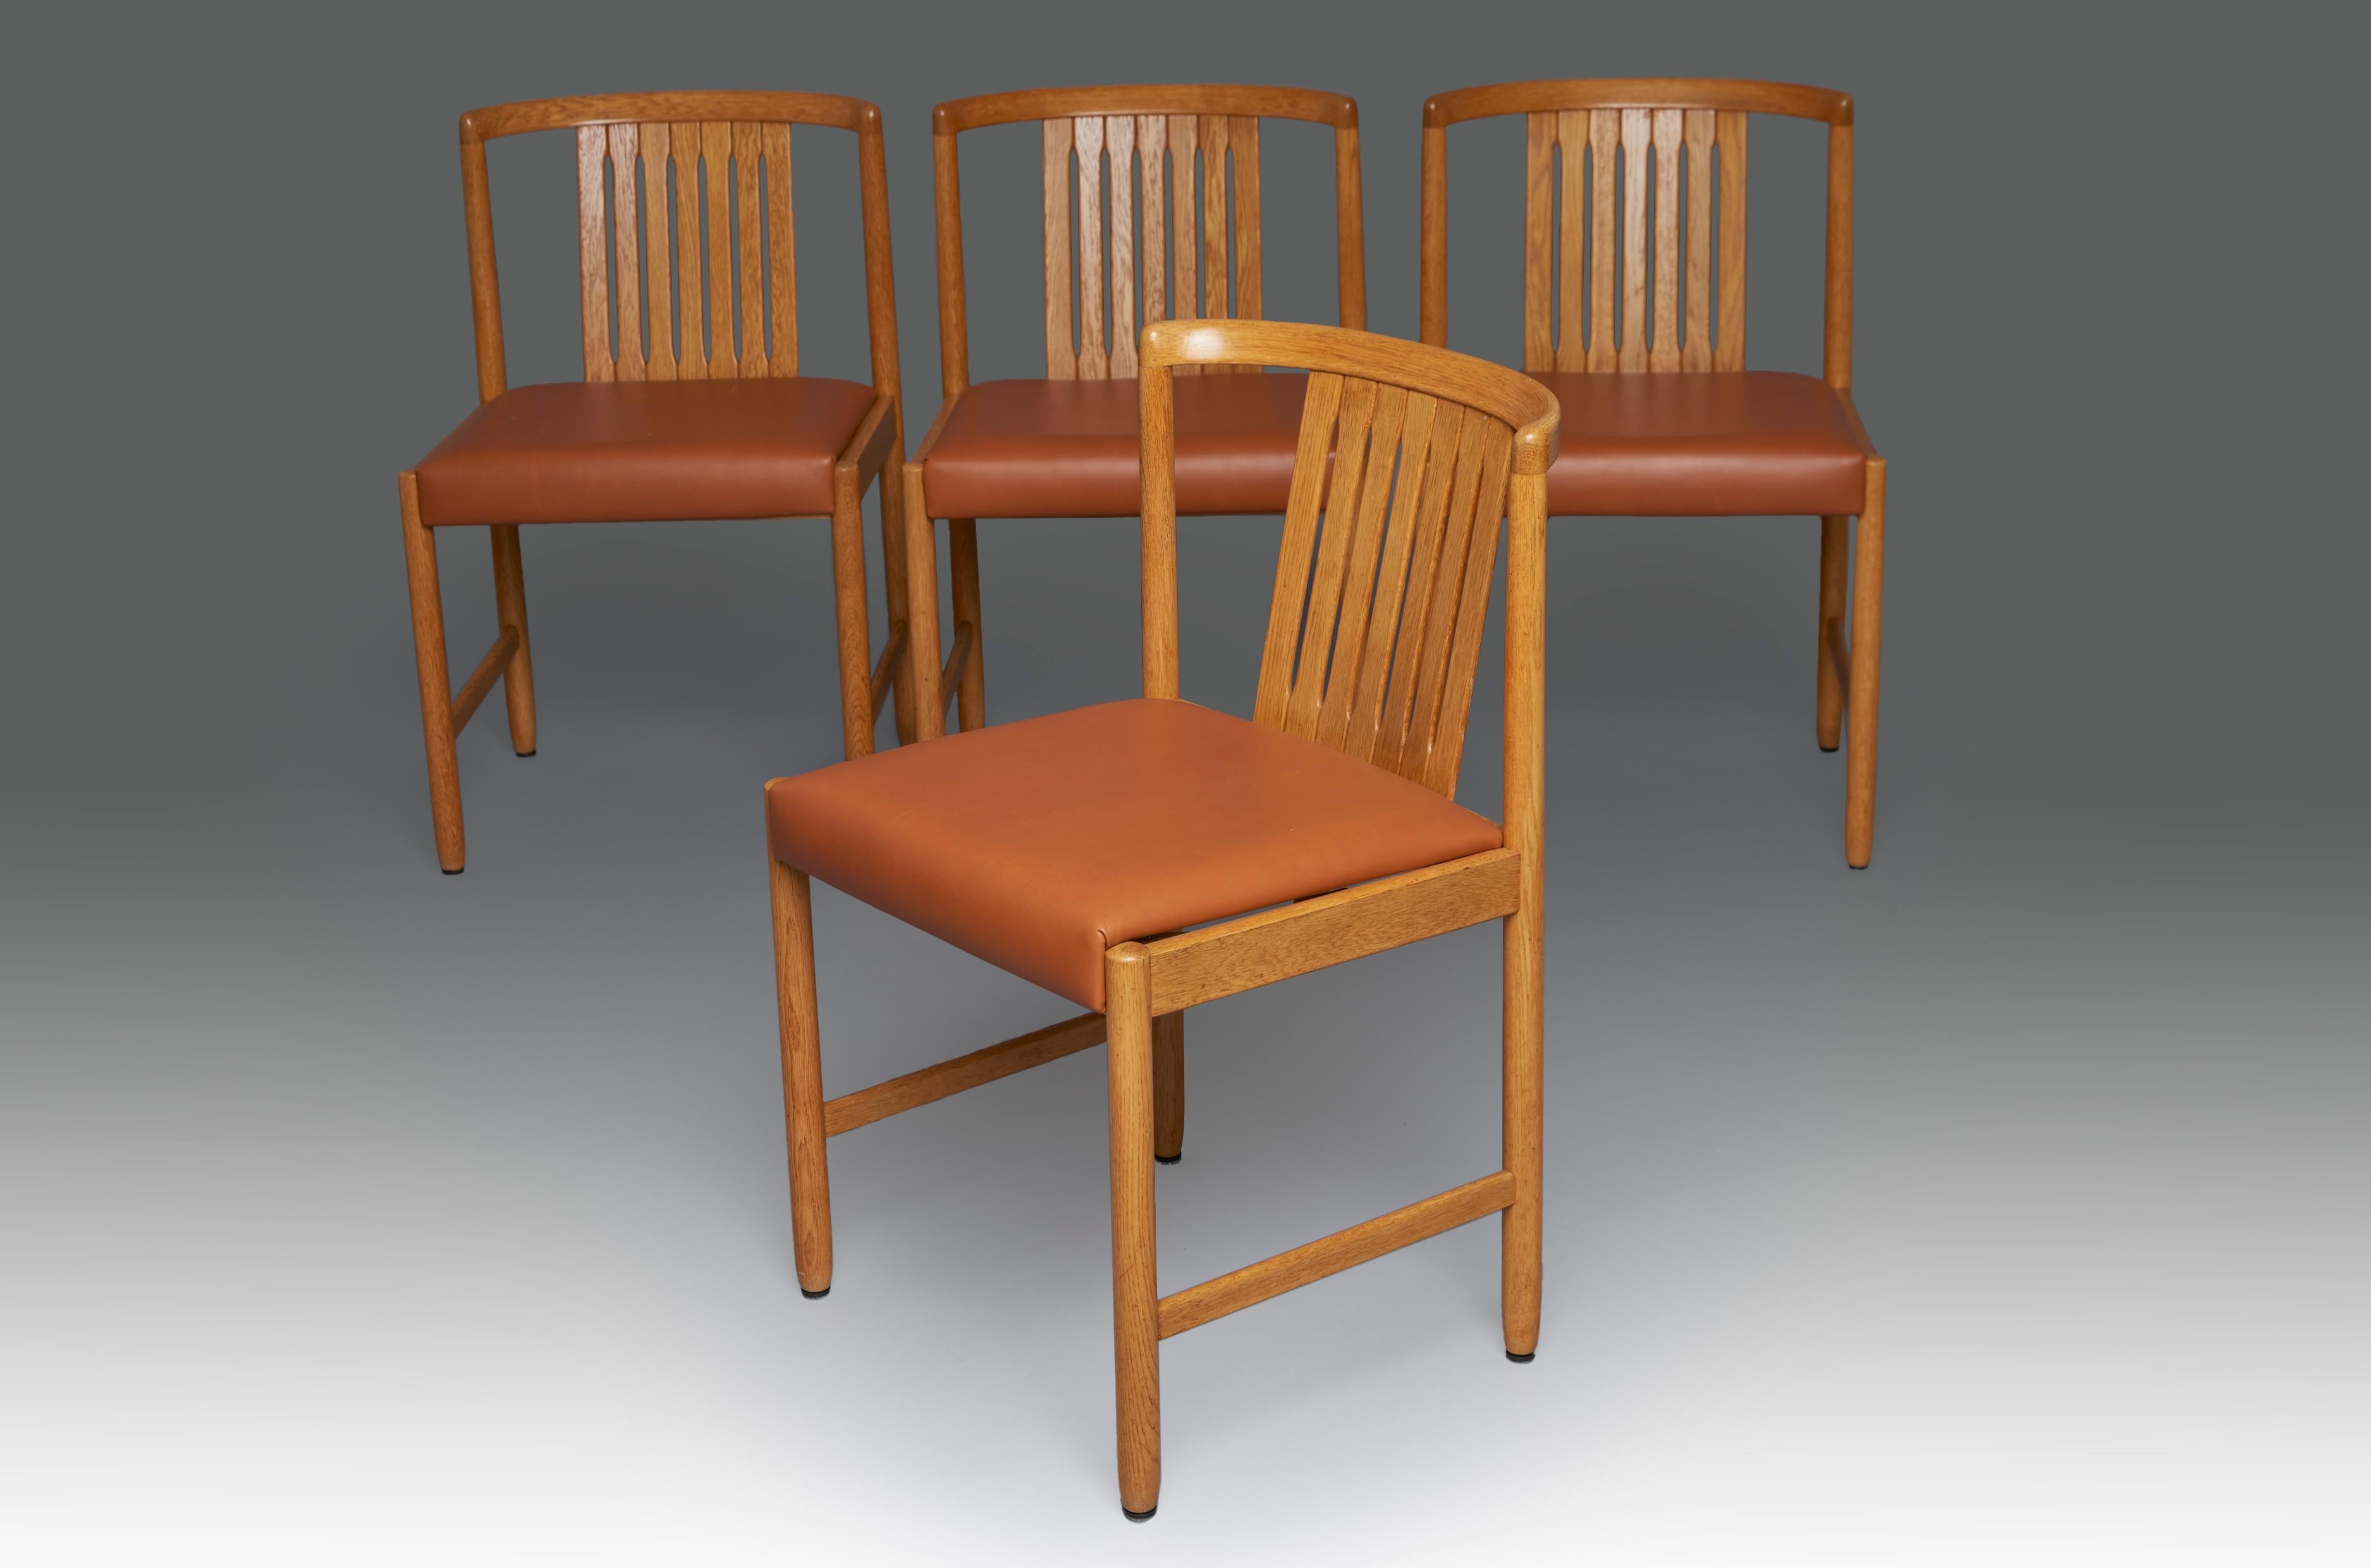 Ensemble de quatre chaises en teck et cuir fauve conçu par Bertil Fridhagen pour Bodafors. Suède, années 1960.

Parfait état, restauré et retapissé. les photos ne montrent que 4 des 6 unités disponibles.

Bertil Fridhagen était un architecte et